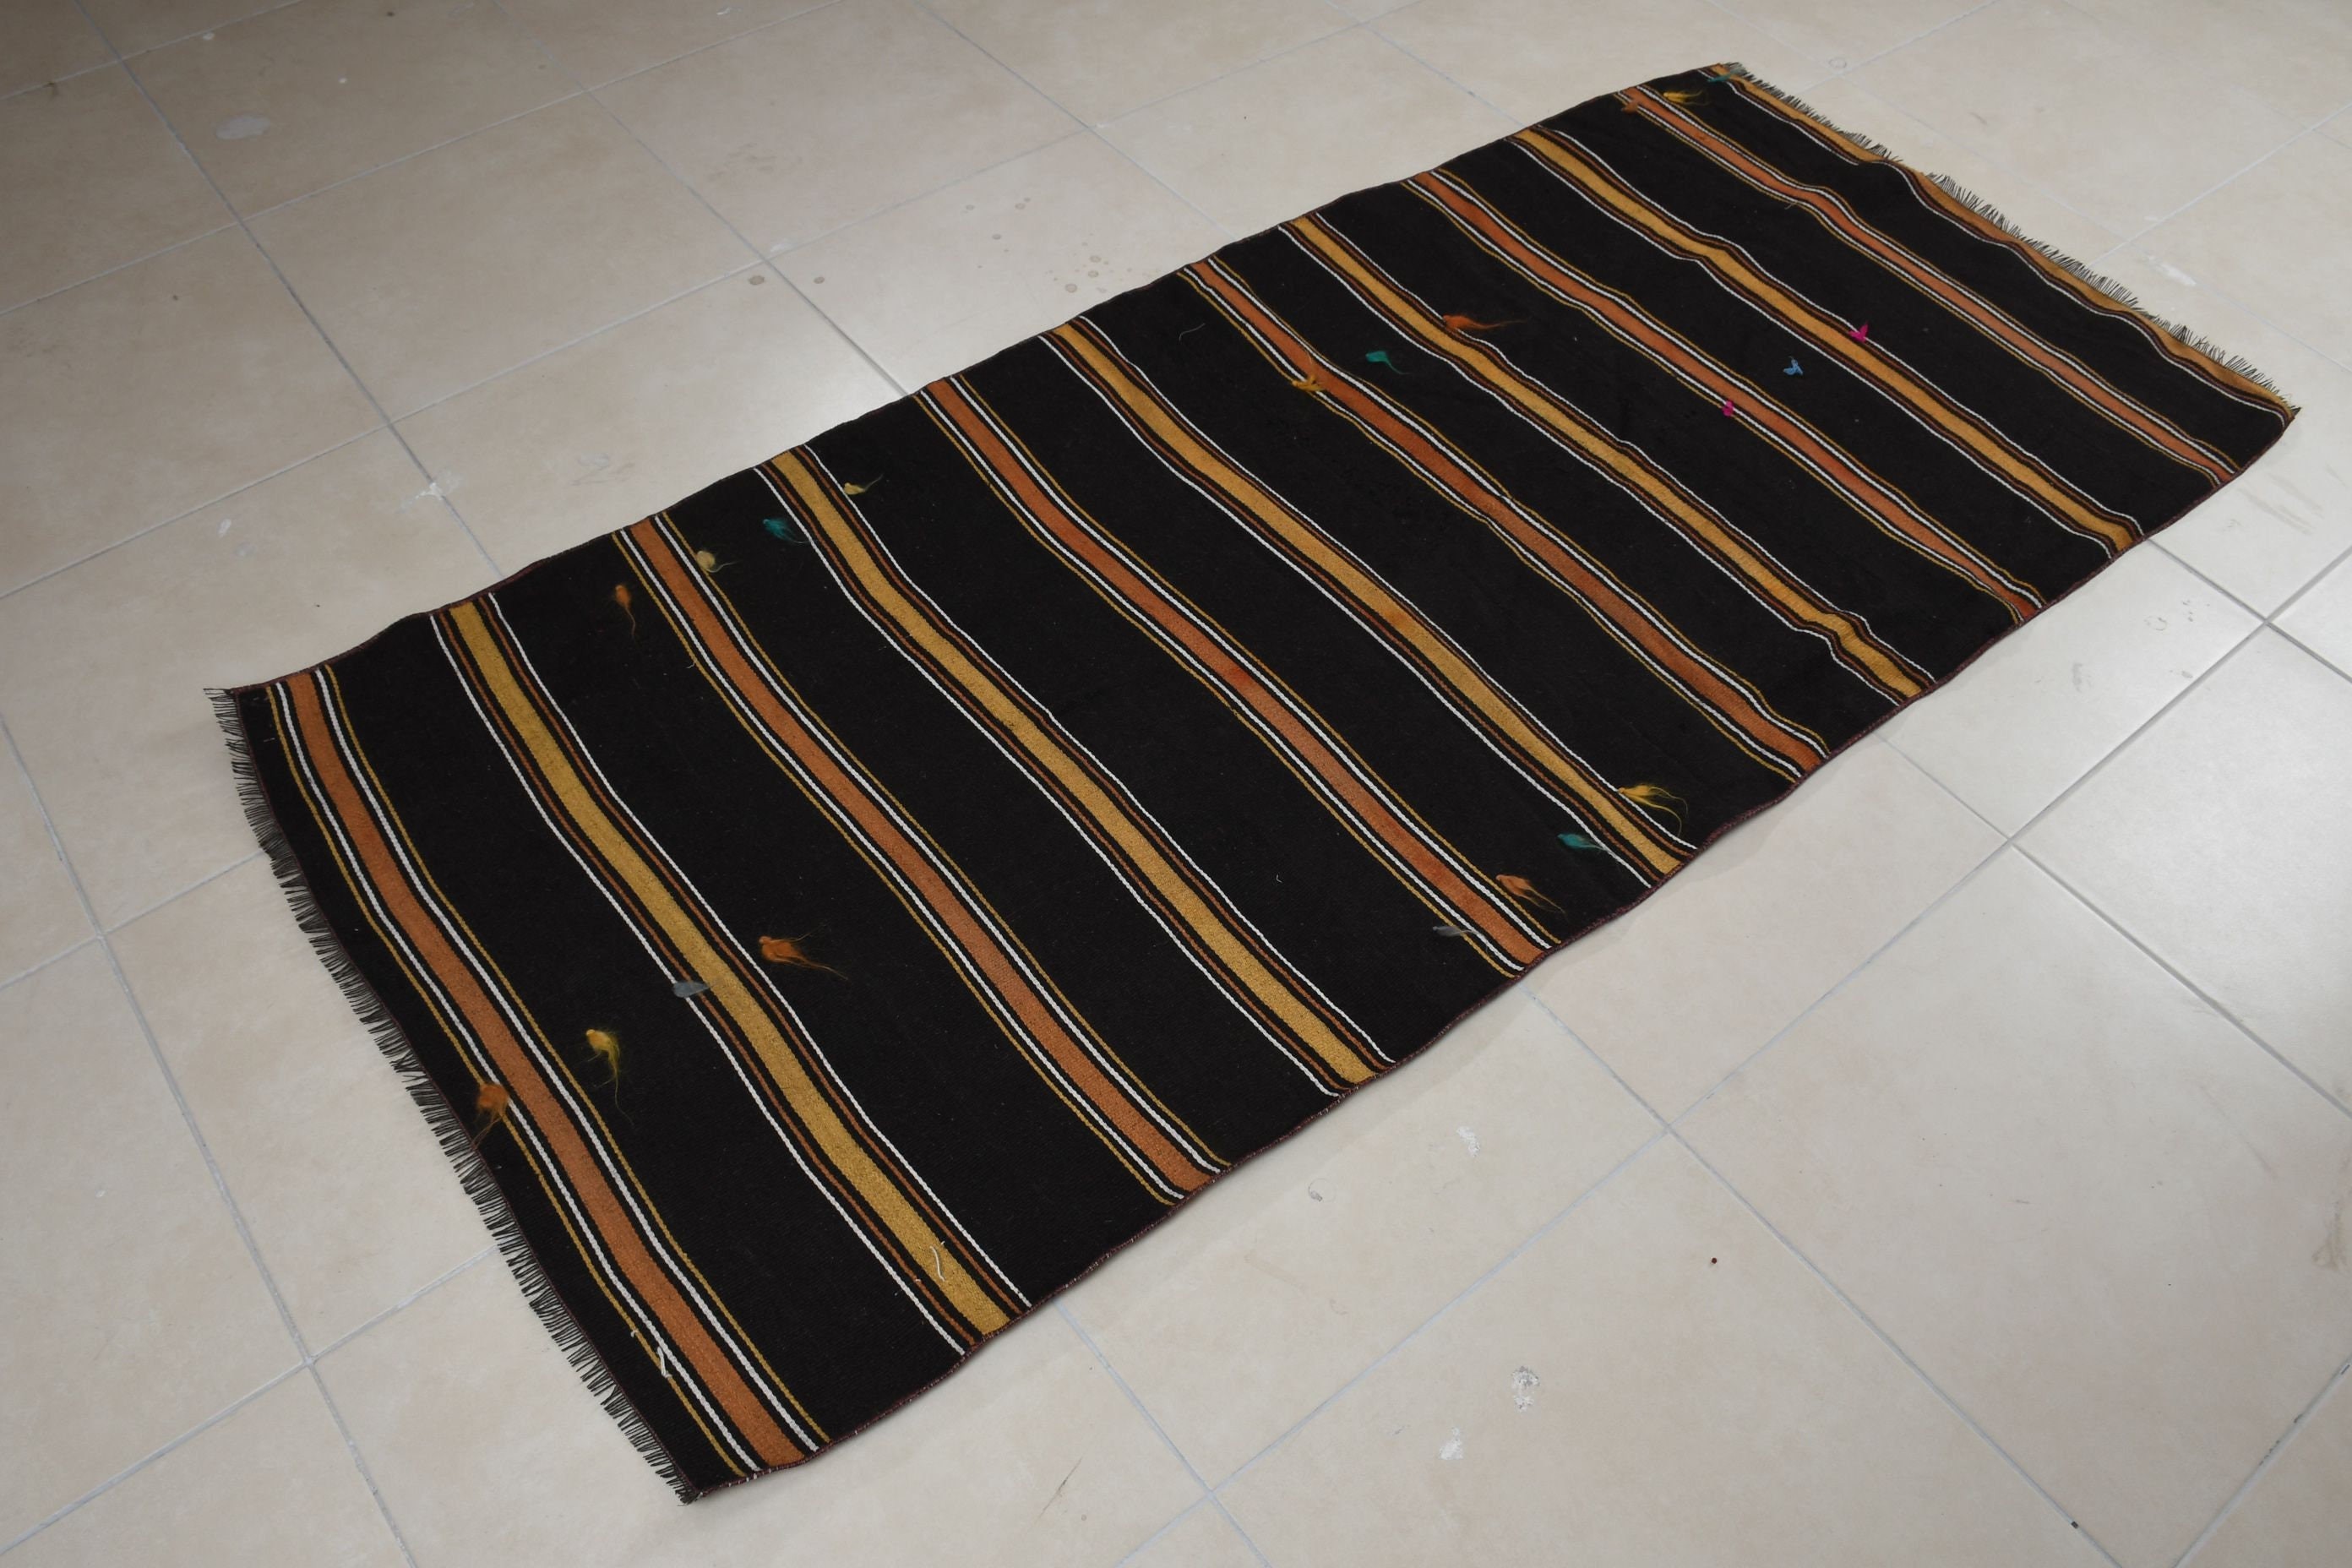 Moroccan Rug, Entry Rug, Old Rug, Kilim, 3.2x7.1 ft Accent Rug, Vintage Rugs, Brown Bedroom Rug, Floor Rugs, Turkish Rugs, Rugs for Nursery